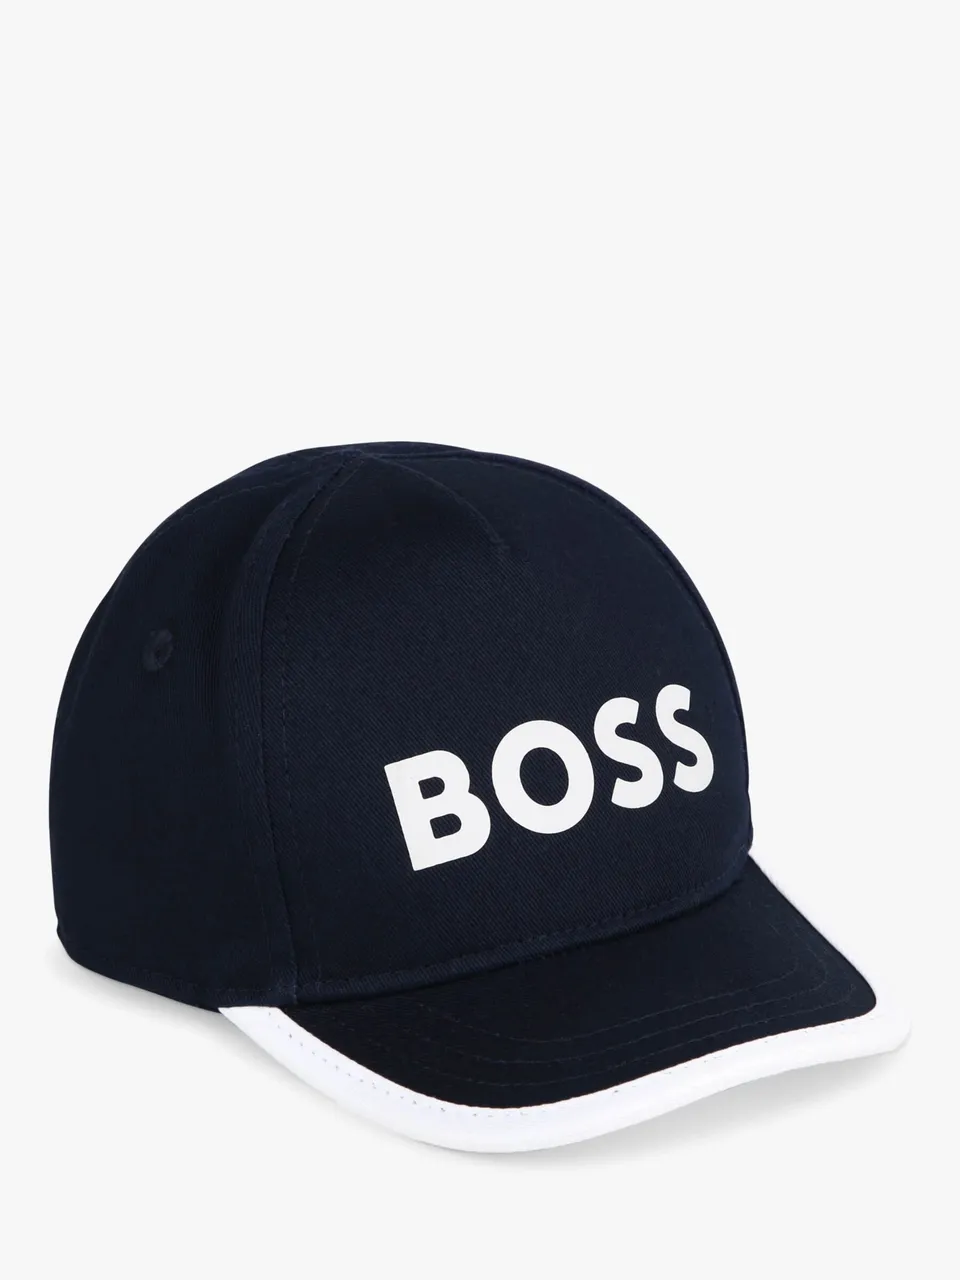 Hugo Boss BOSS Baby Logo Embroidered Baseball Hat - Black - Unisex